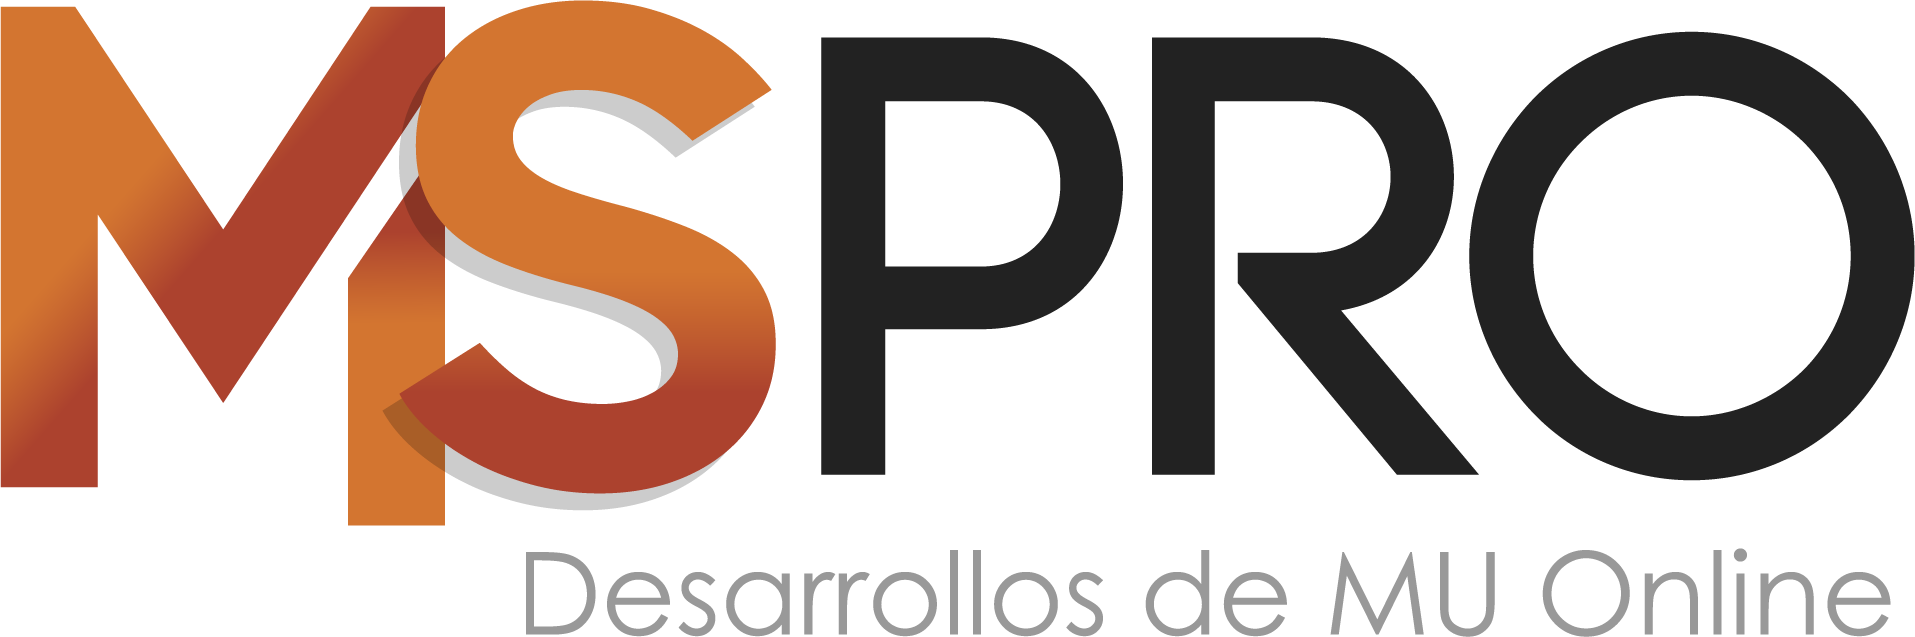 mspro-logo